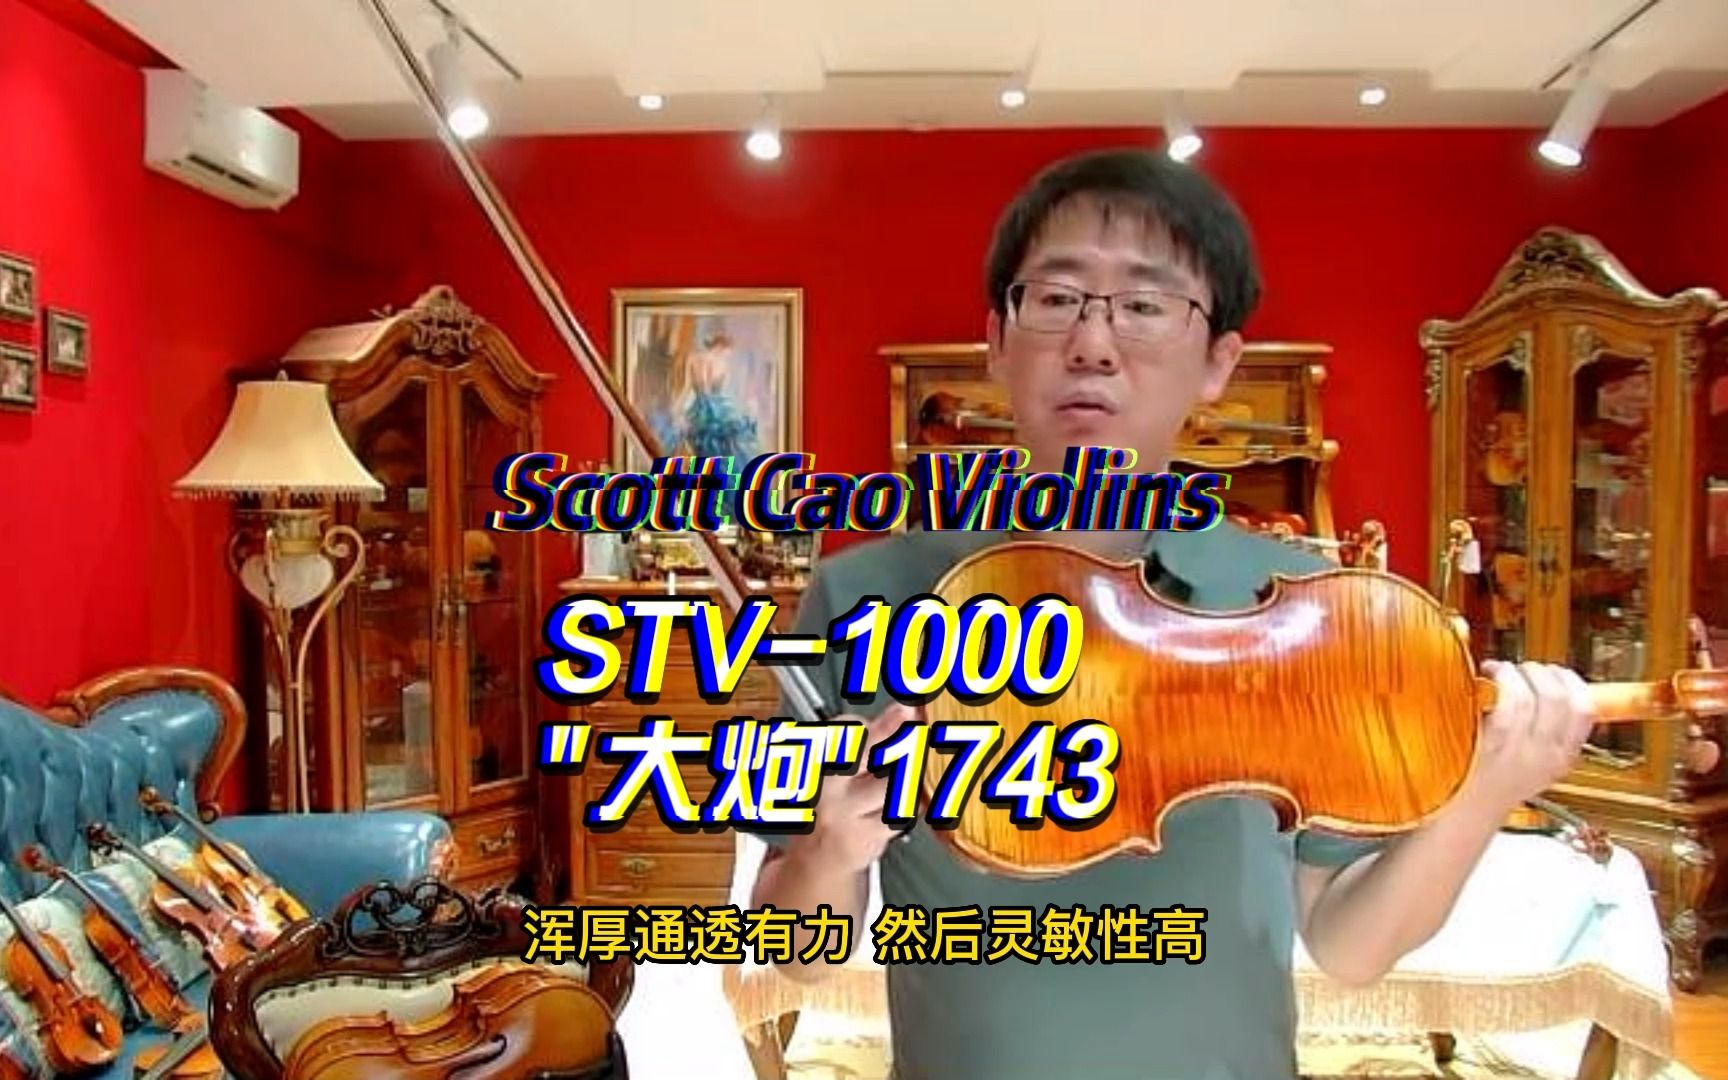 择一事，终一生, 不为繁华易匠心，曹氏提琴1000型号纯手工打造演奏级仿古小提琴